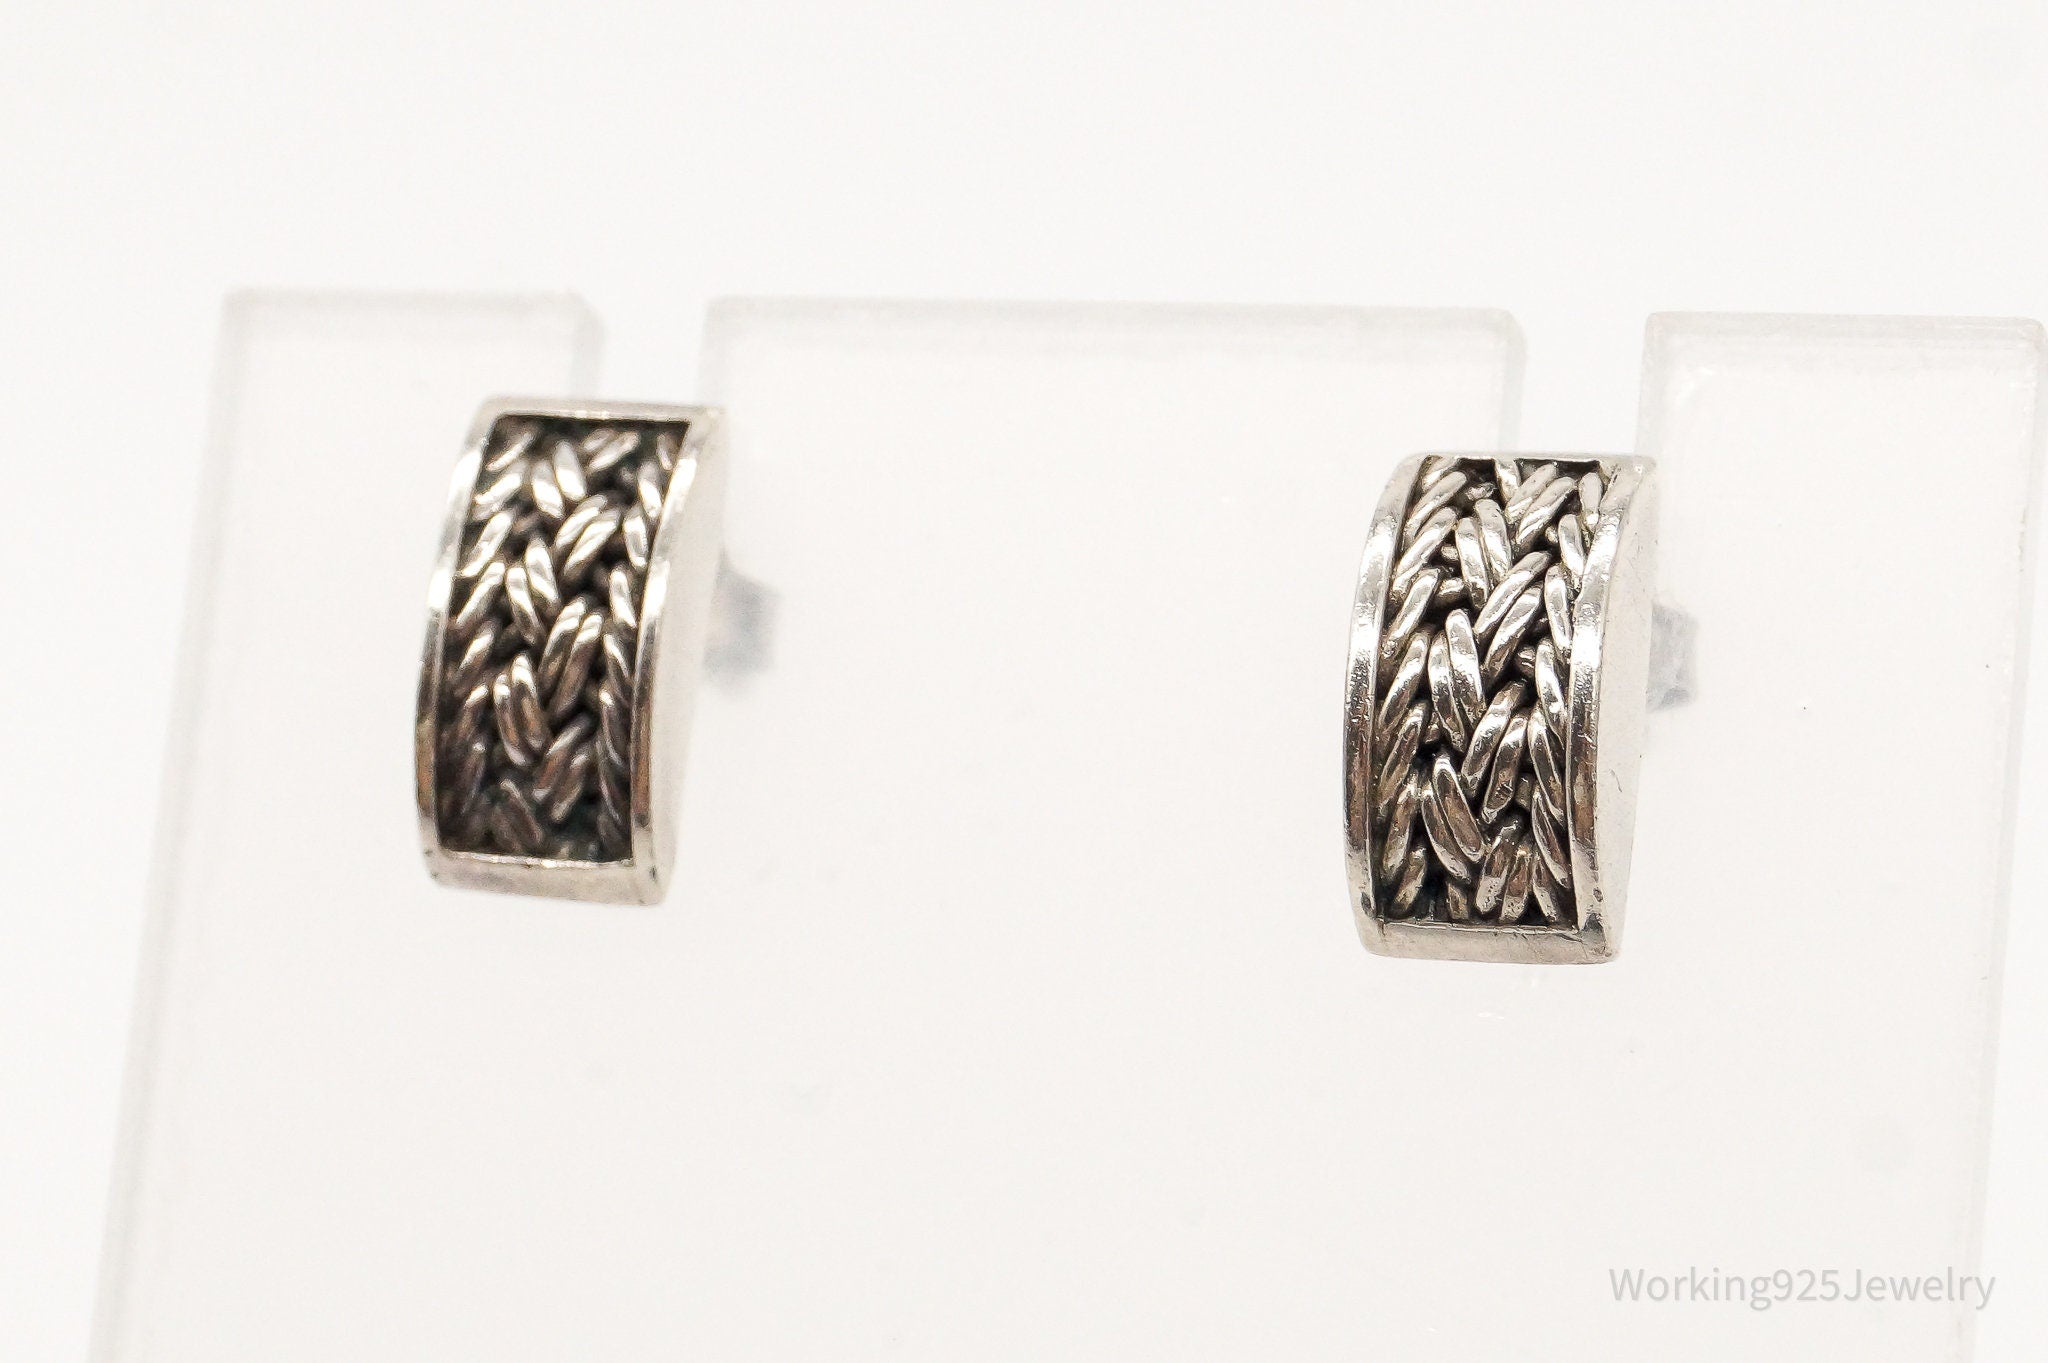 Designer Lois Hill Woven Sterling Silver Earrings